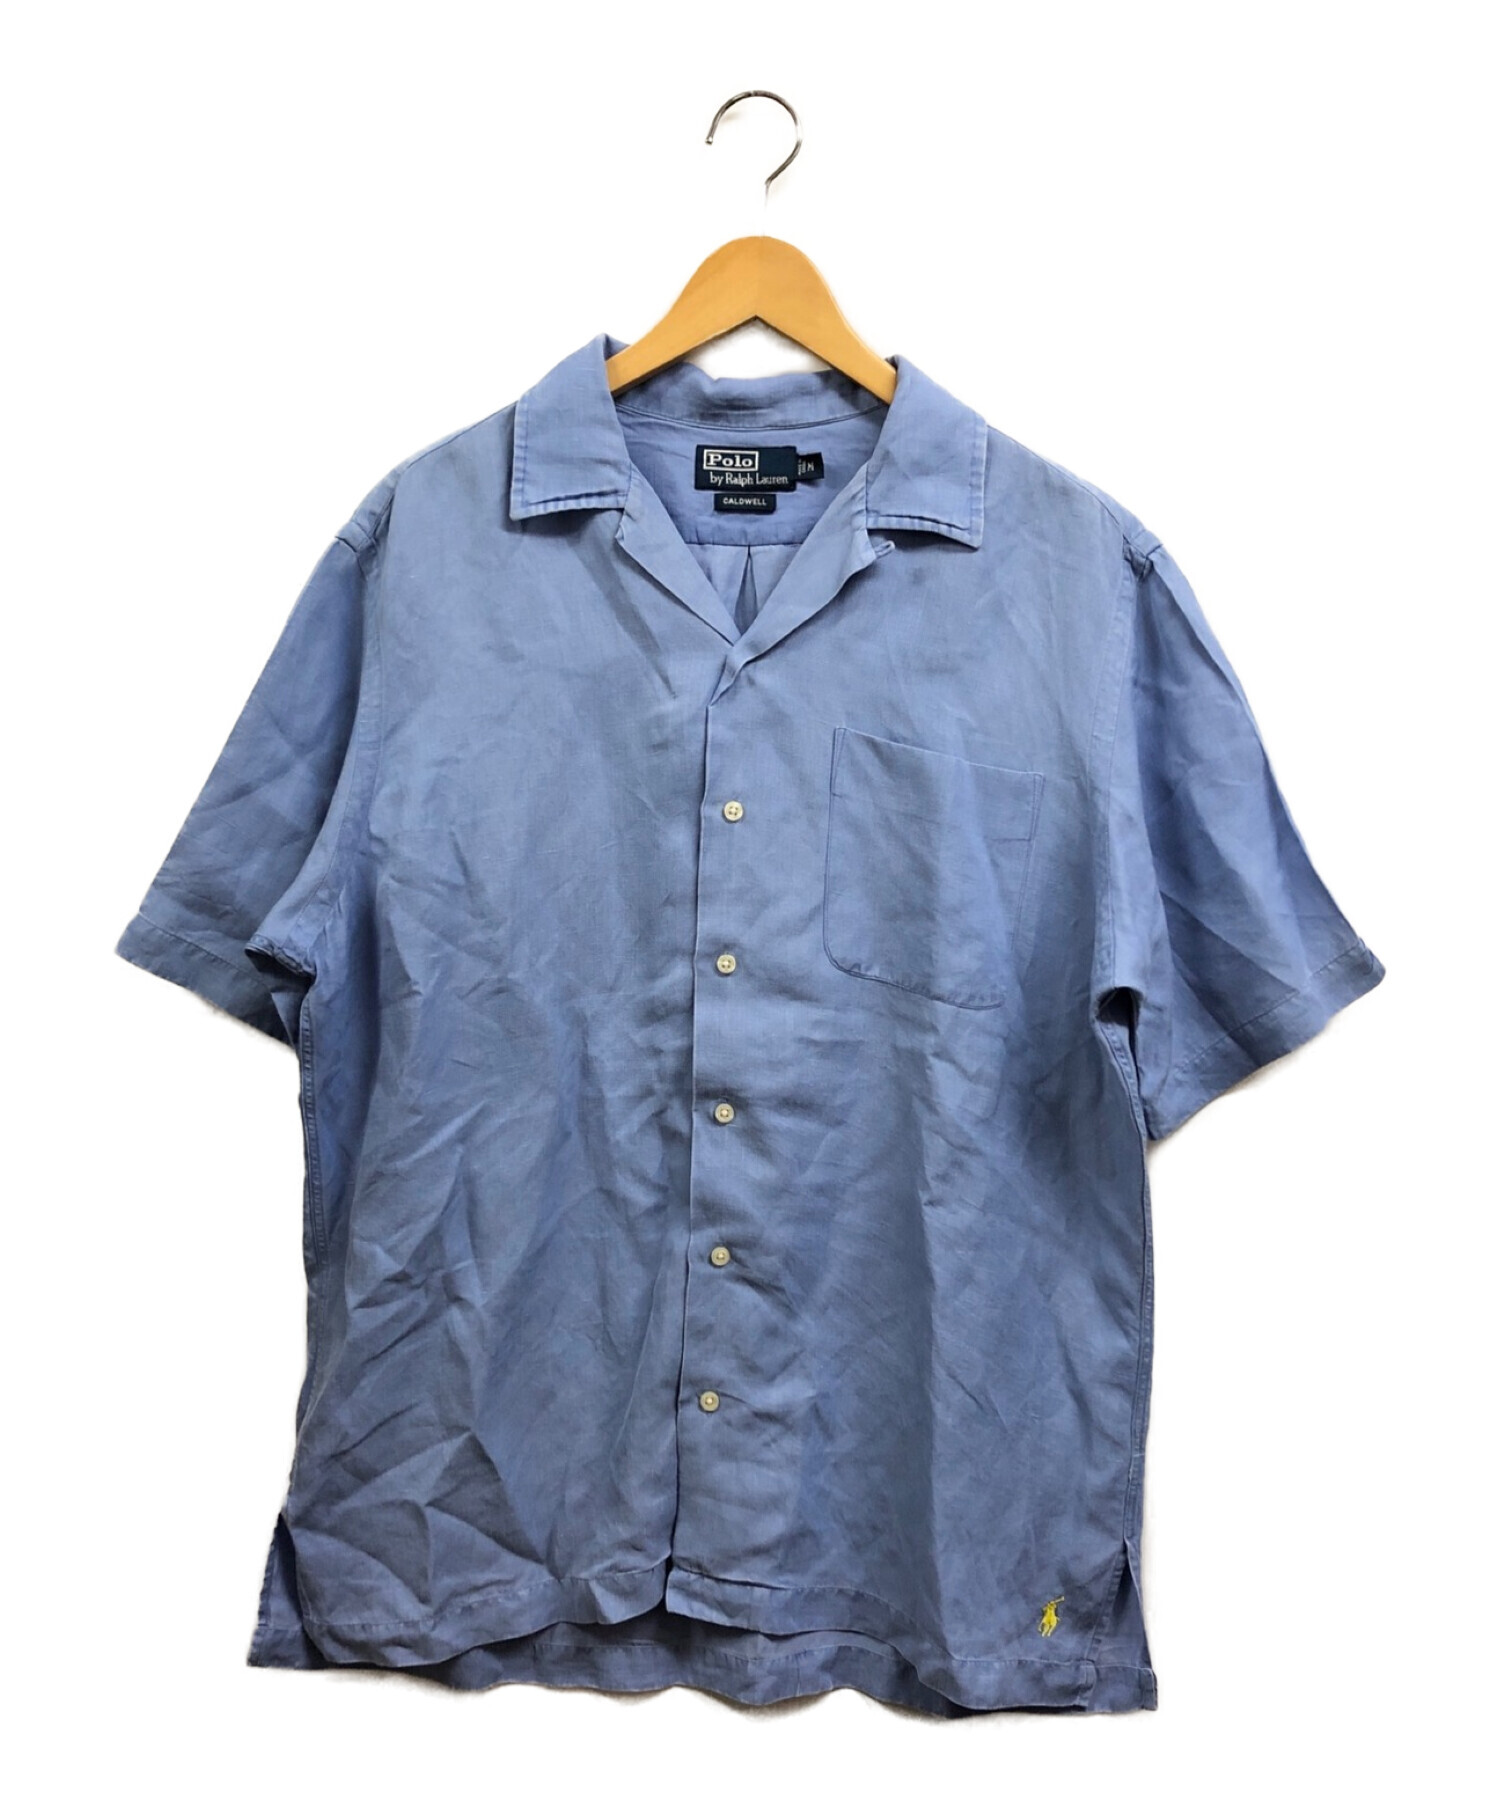 POLO RALPH LAUREN (ポロ・ラルフローレン) オープンカラーシャツ ブルー サイズ:M